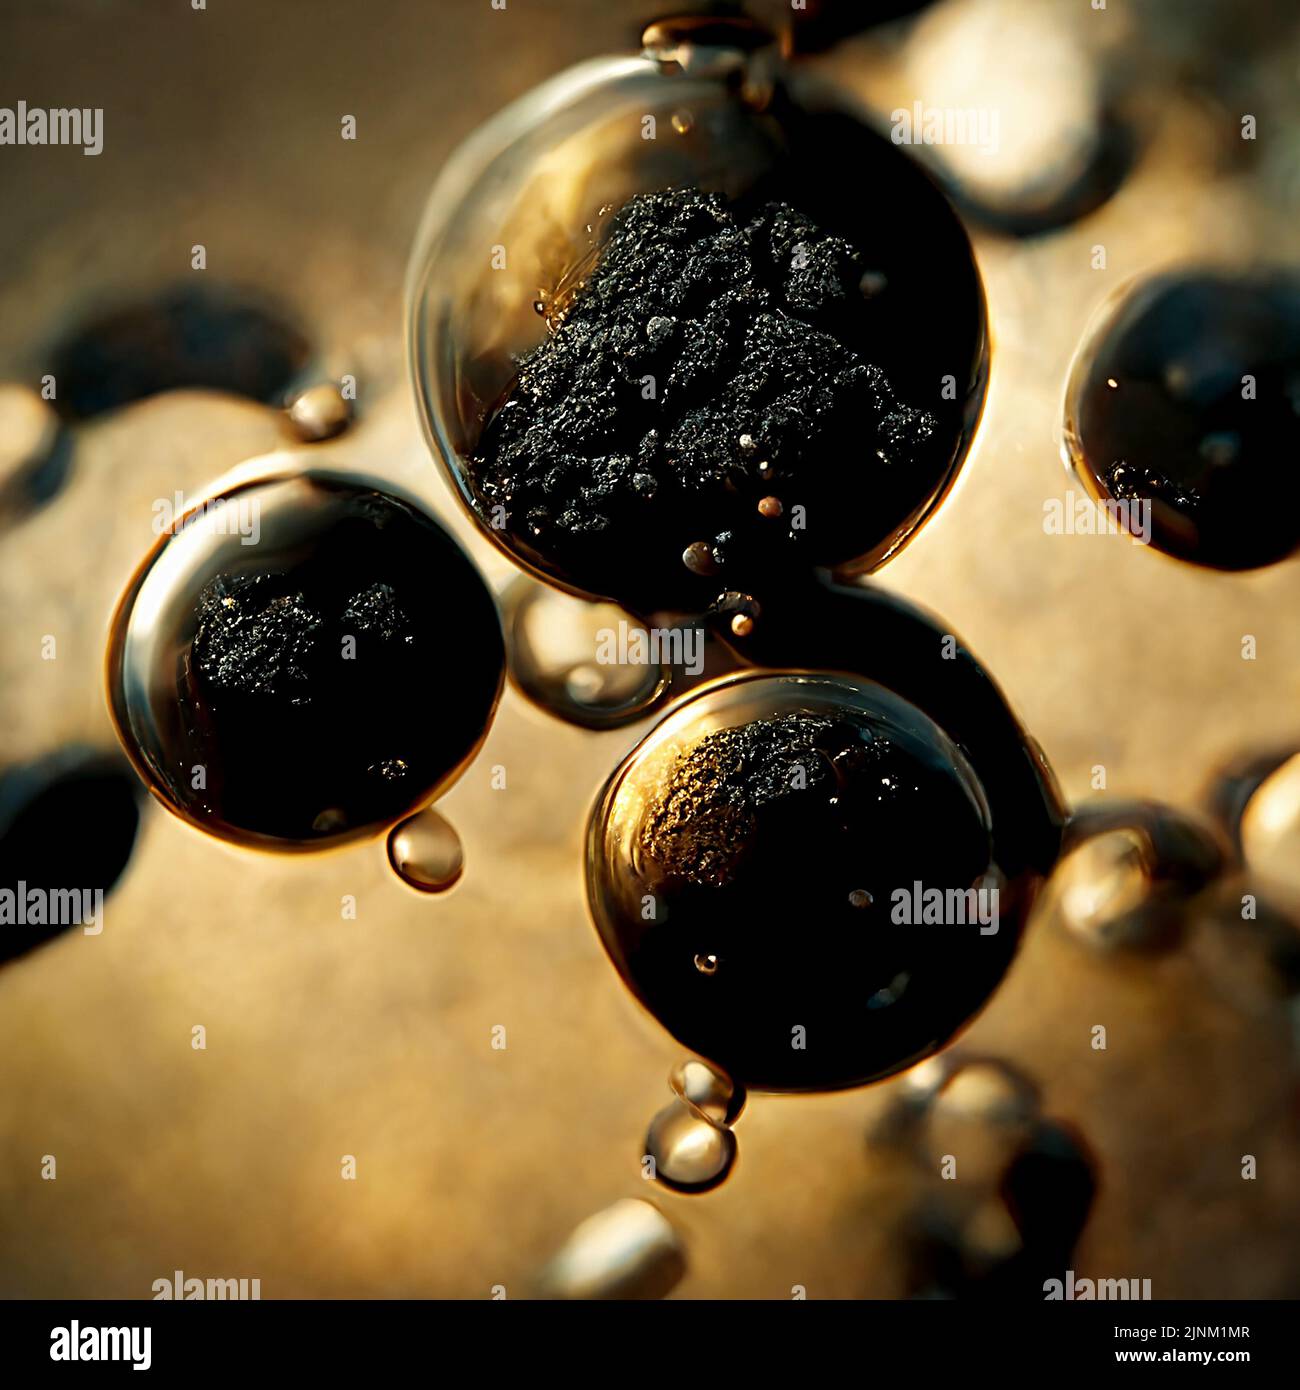 Abstract 3D immagine delle molecole particelle di fungo e muffa al microscopio. Batteri neri nocivi che sembrano gocce di olio motore di cattiva qualità. Foto Stock